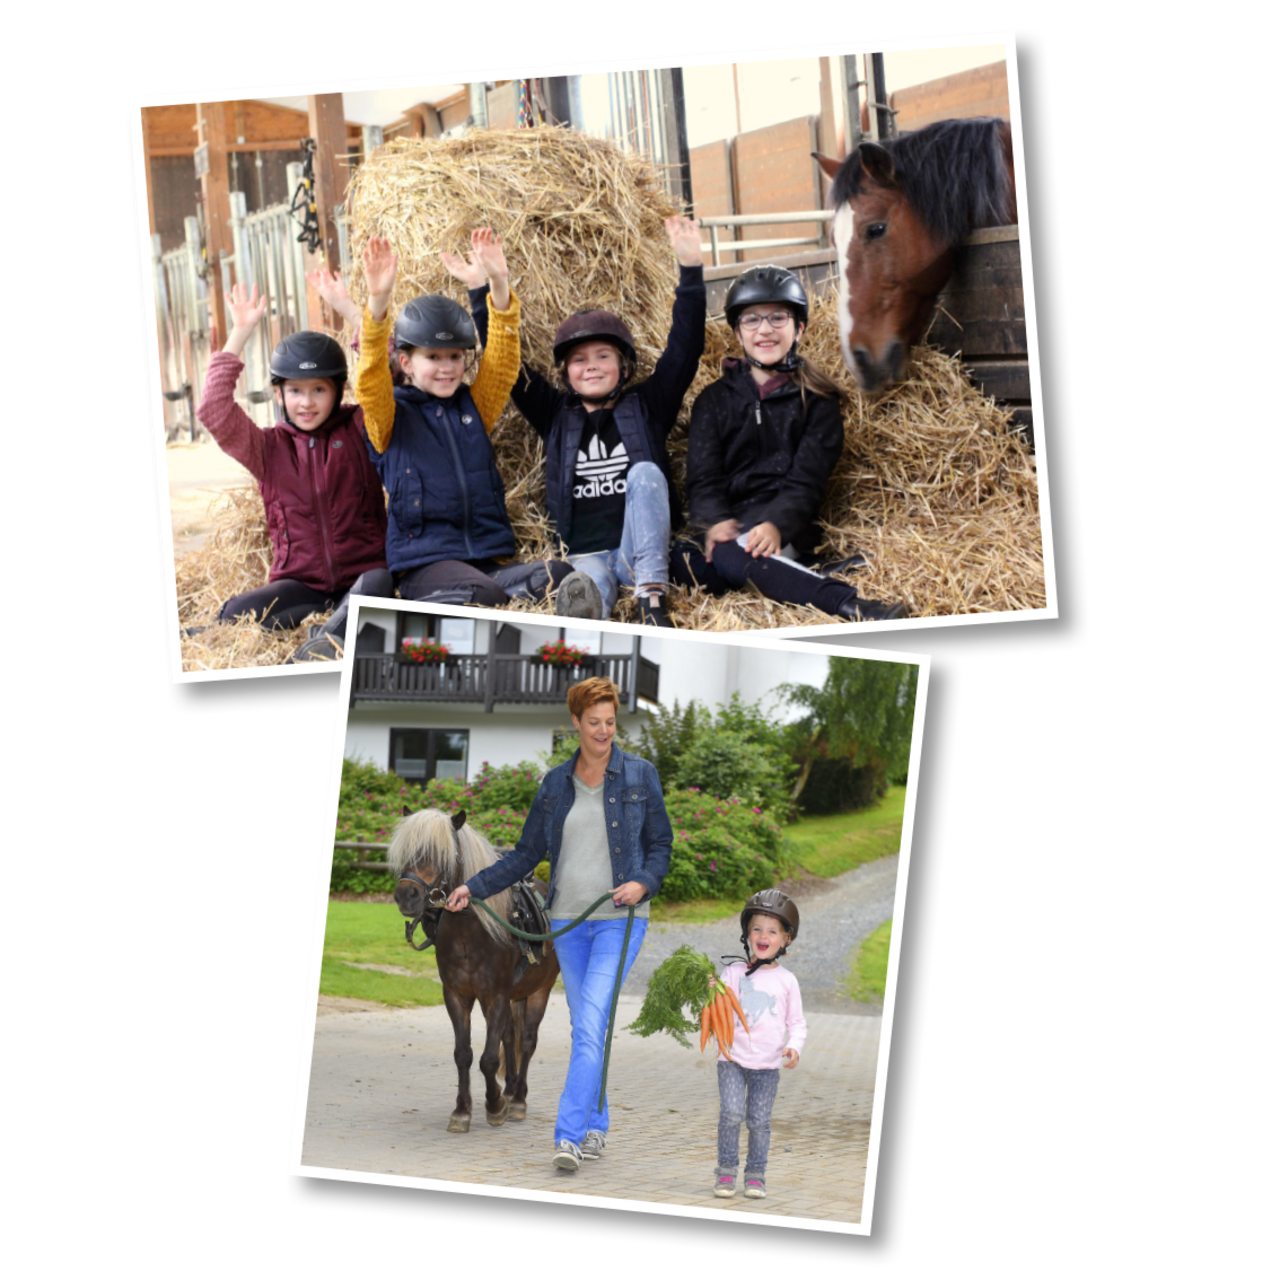 Impressionen vom Hof: Kinder spielen im Stroh und ein Pony beim Spaziergang